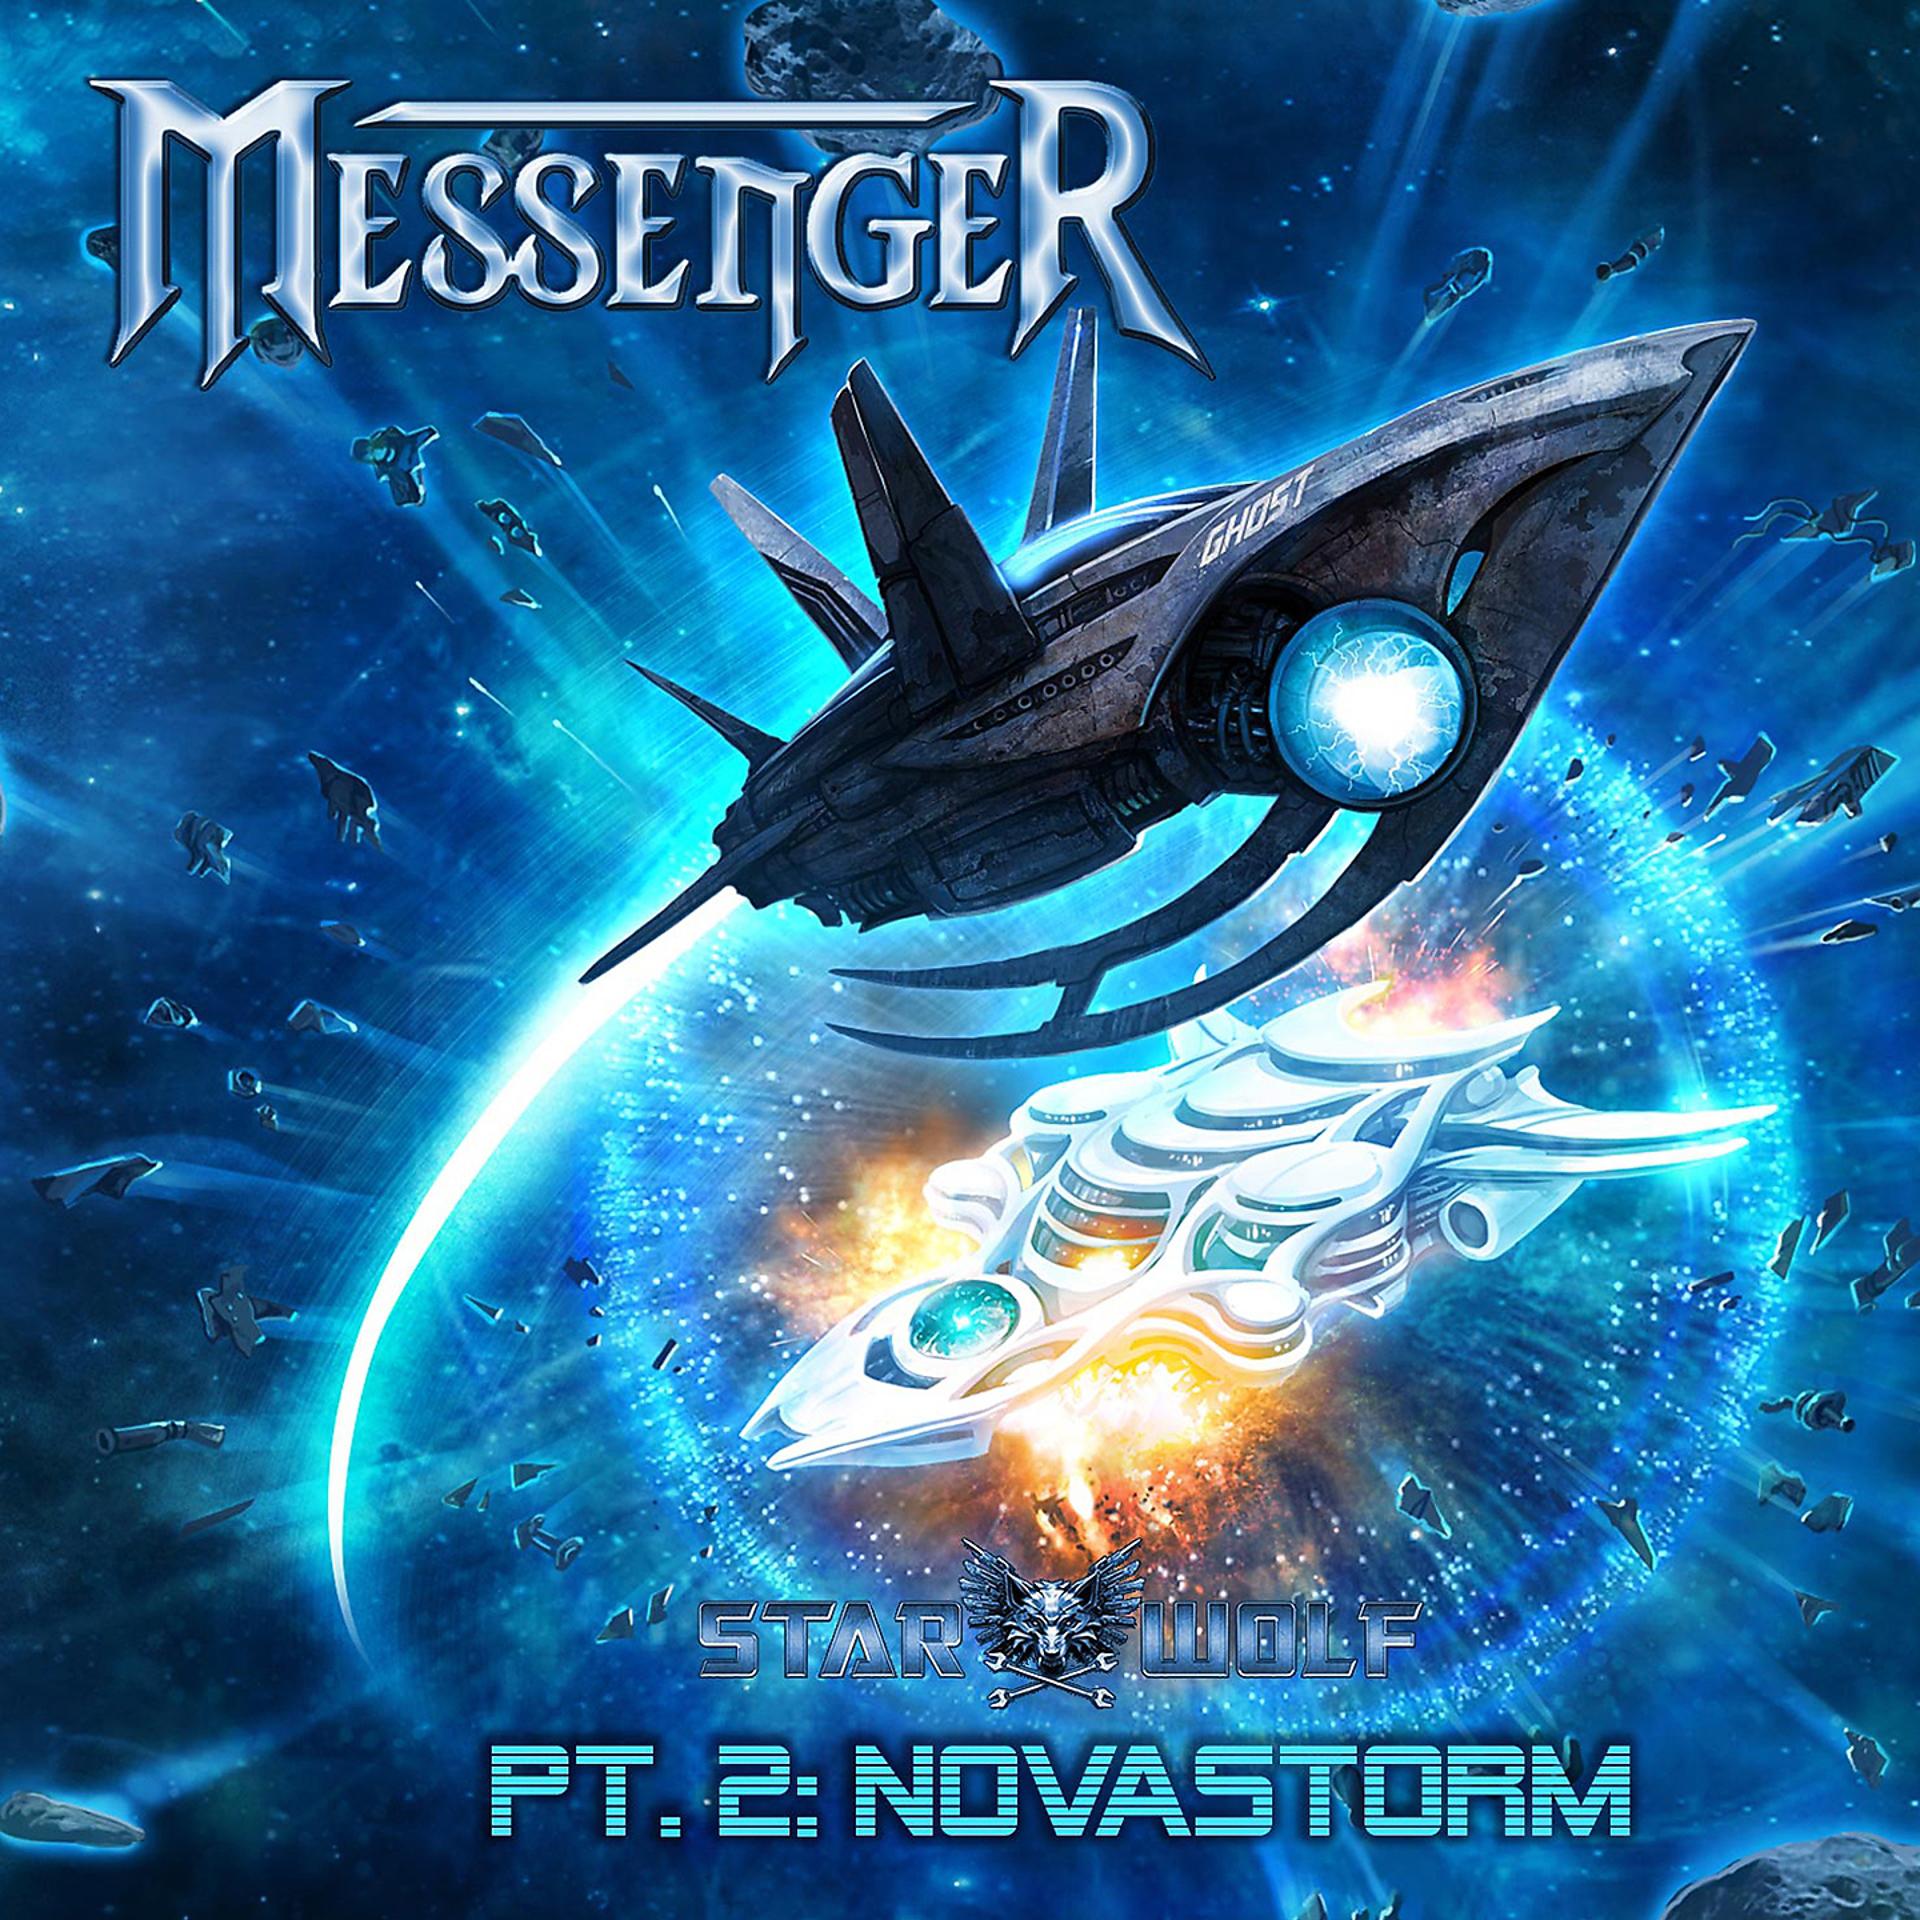 Мессенджеры песня. Novastorm. Novastorm 1994. Messenger - "Starwolf - pt. 1: The Messengers" (2013). Wings of Destiny альбом.